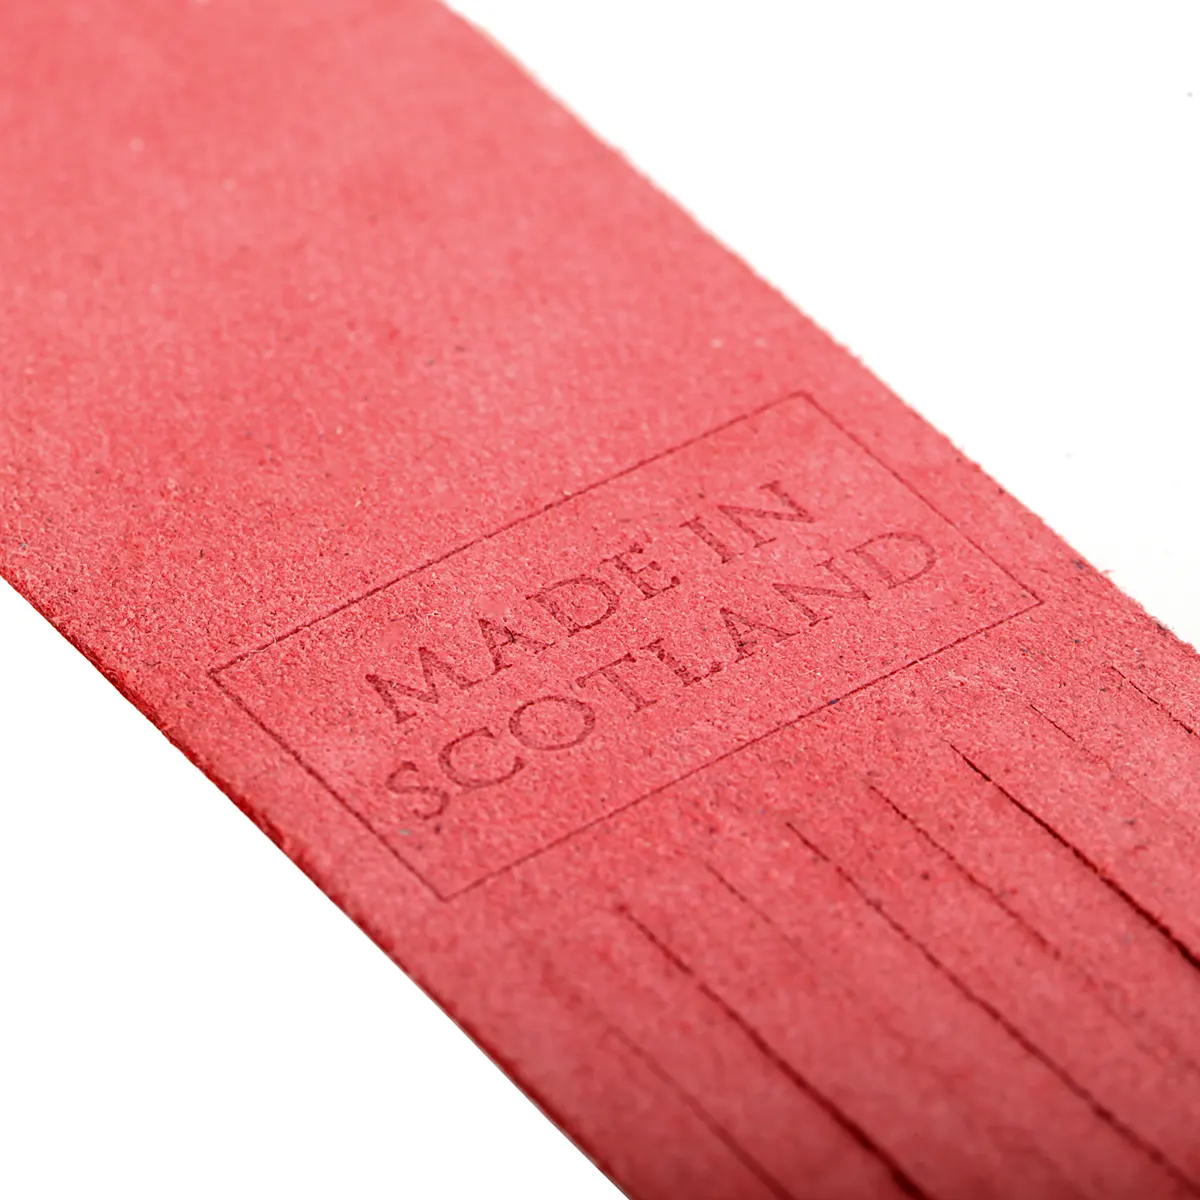 Oban - Lesezeichen aus Leder in Rot - Made in Scotland